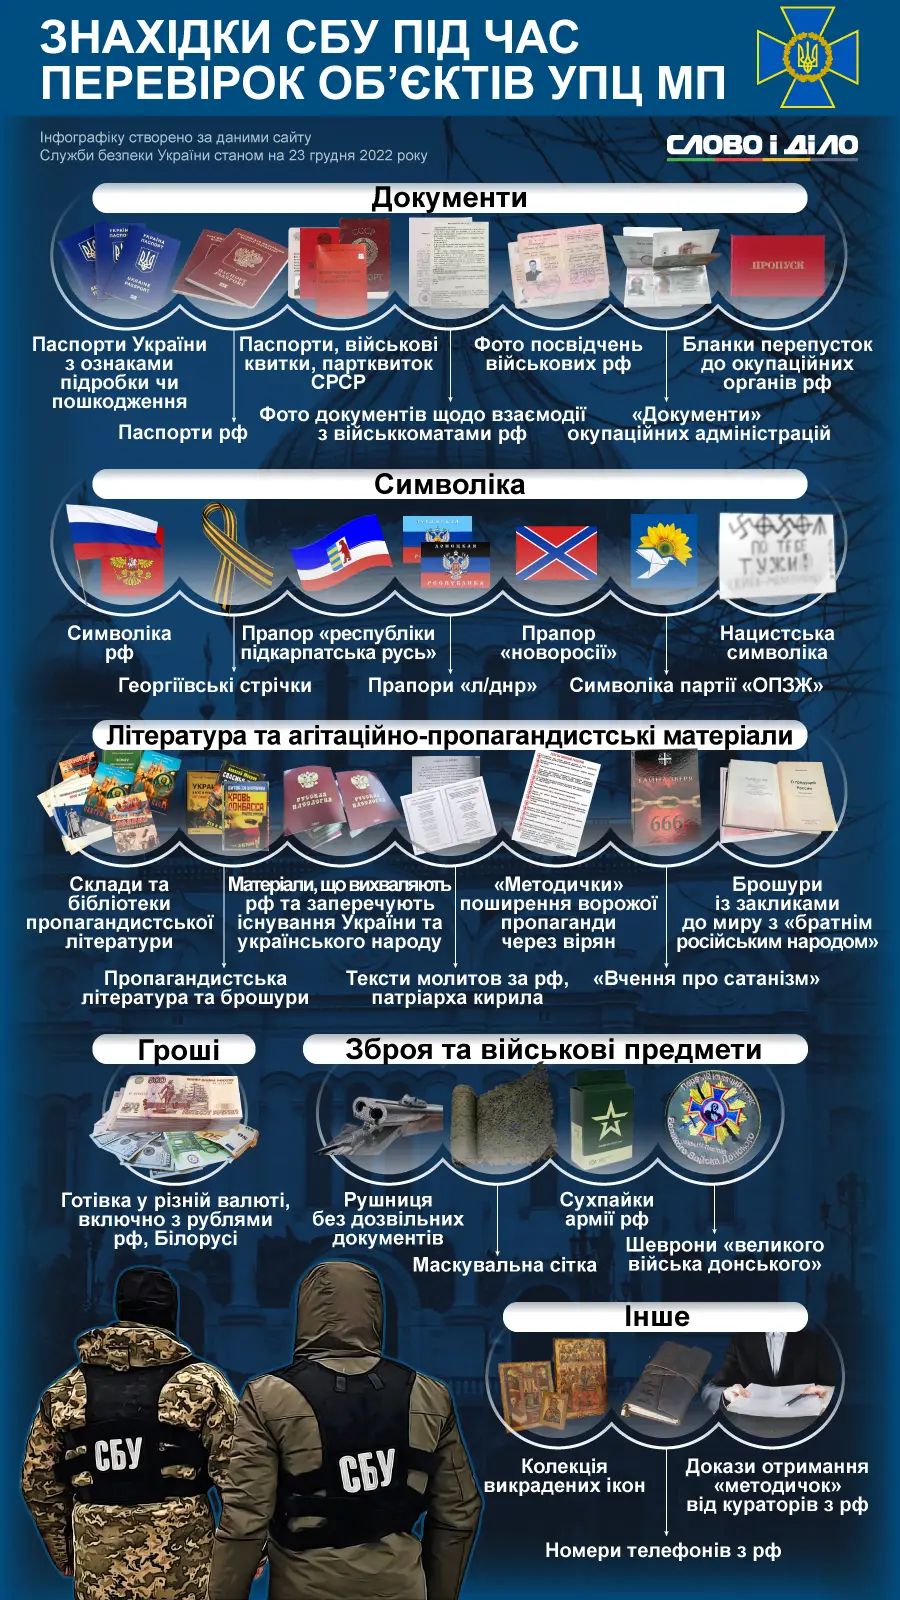 Флаги «Л/ДНР», удостоверение оккупантов, ворованные иконы. В СМИ подытожили находки во время обысков в УПЦ МП